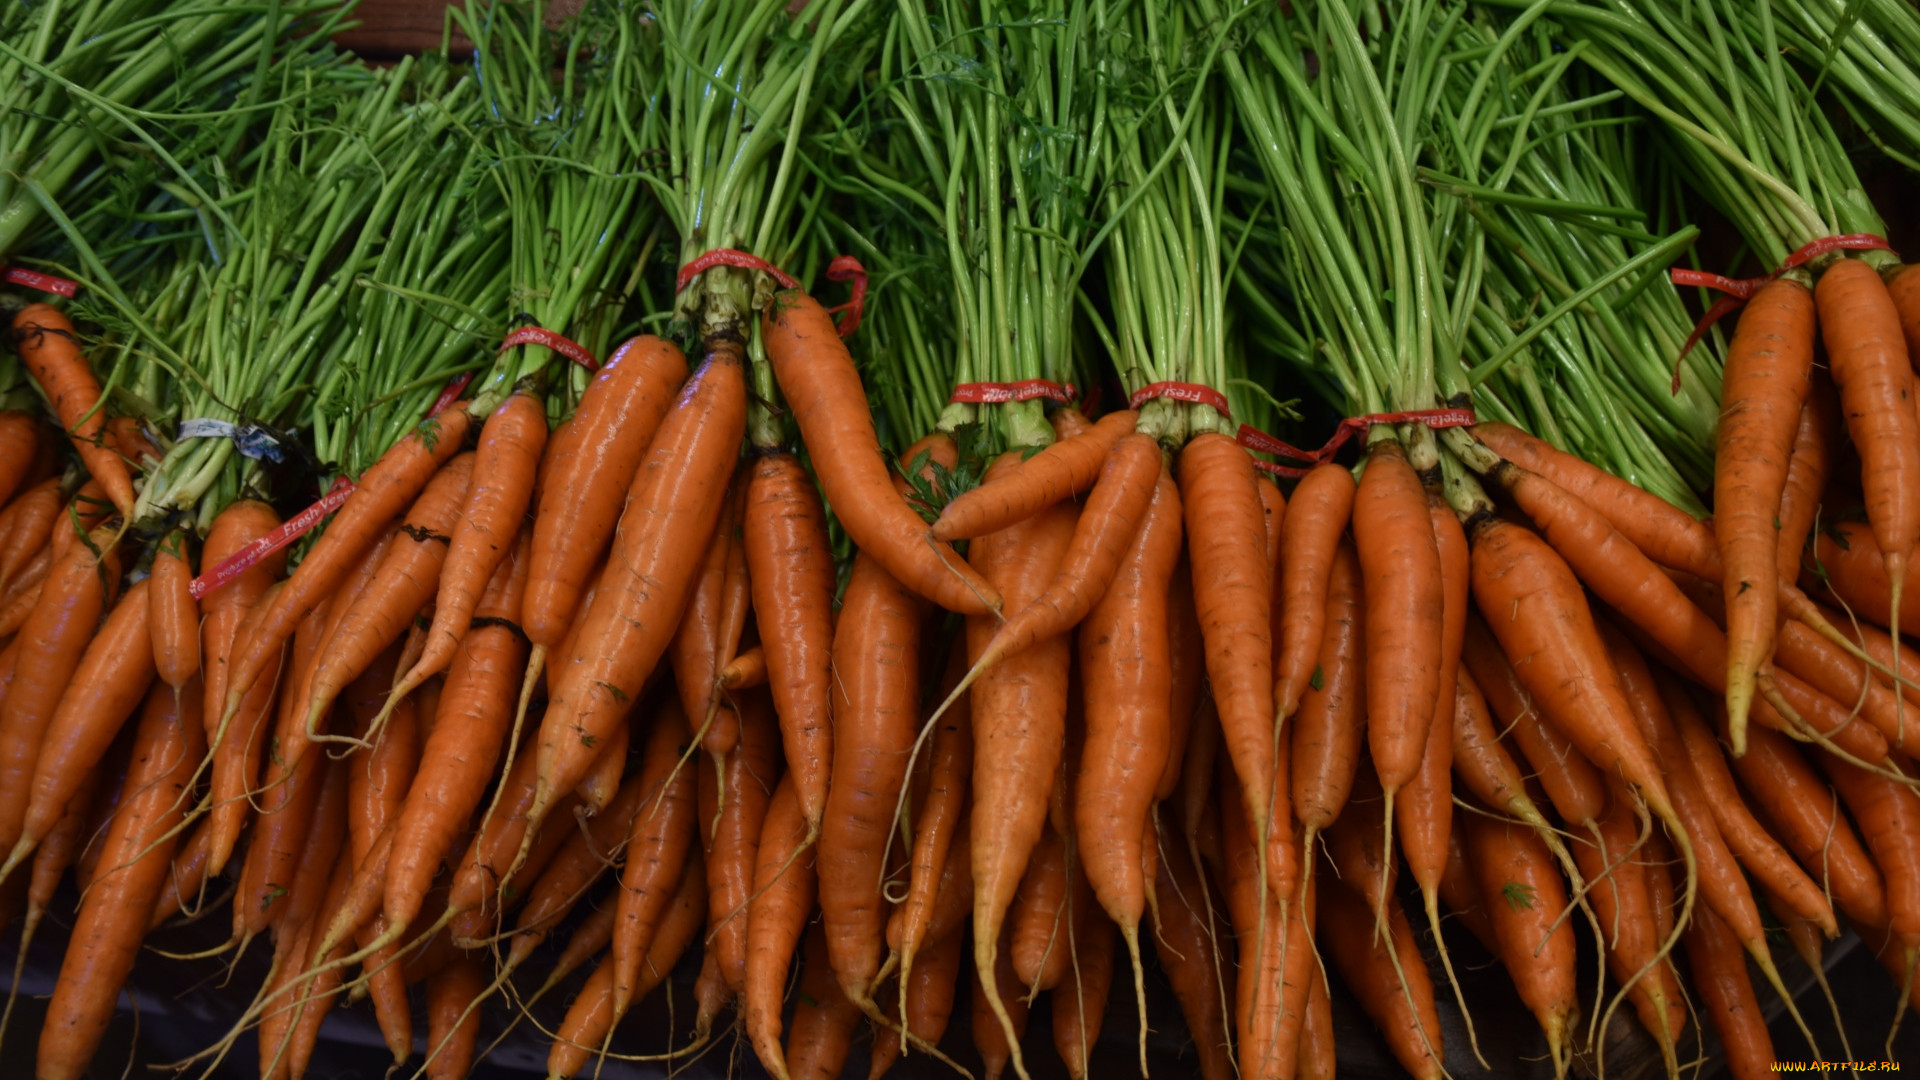 General 1920x1080 food vegetables carrots